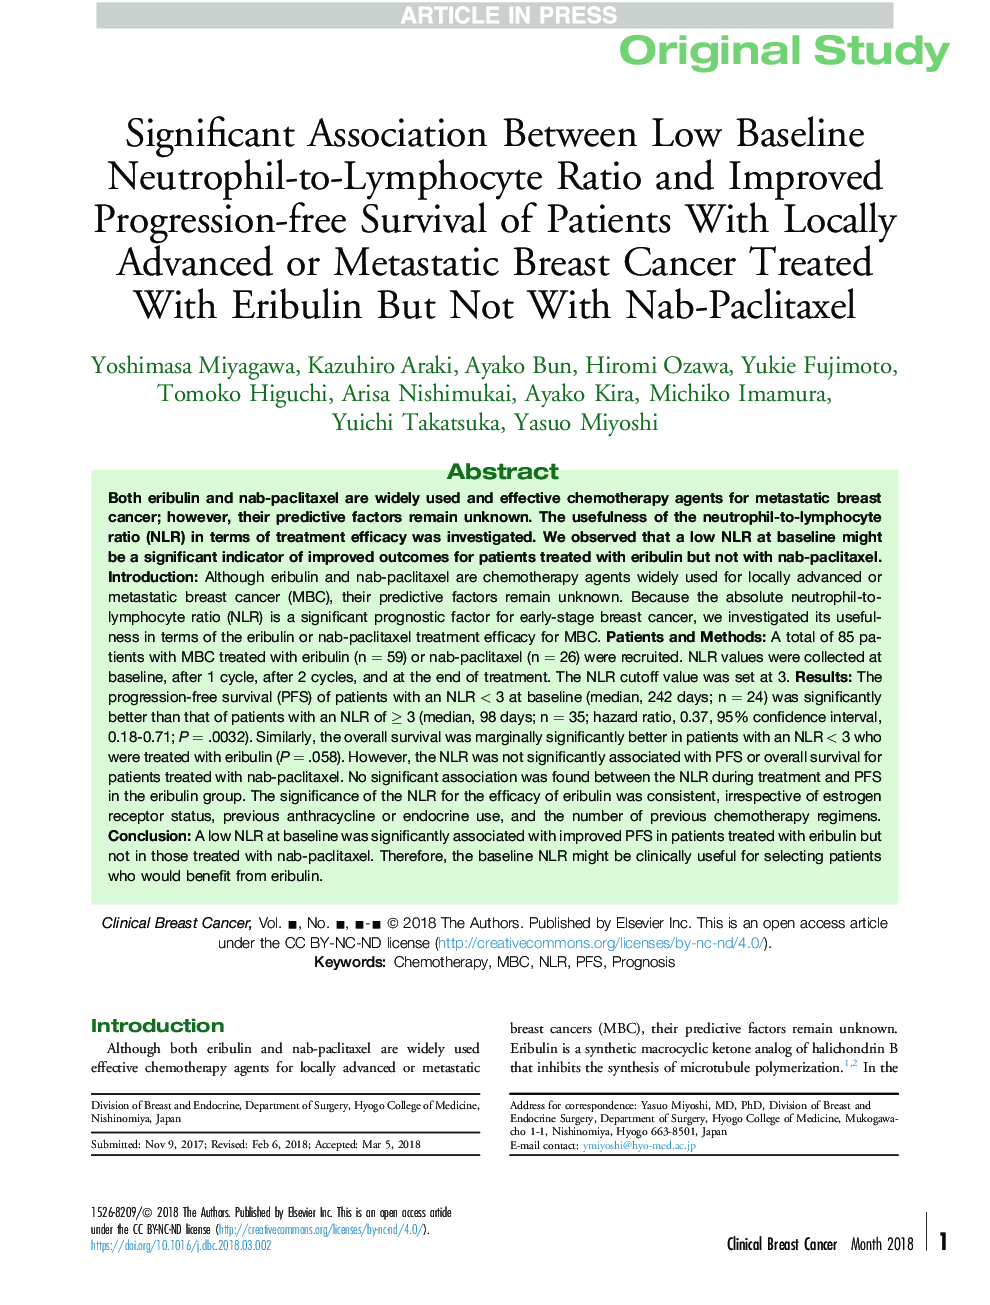 ارتباط قابل ملاحظه ای بین نسبت نوتروفیل به لنفوسیت با پایه پایین و بهبودی بدون بقای پیشرفت در بیماران مبتلا به سرطان پستان پیشرفته یا متاستاتیک درمان شده با اریبولین، اما با ناب-پلاکتیکسل